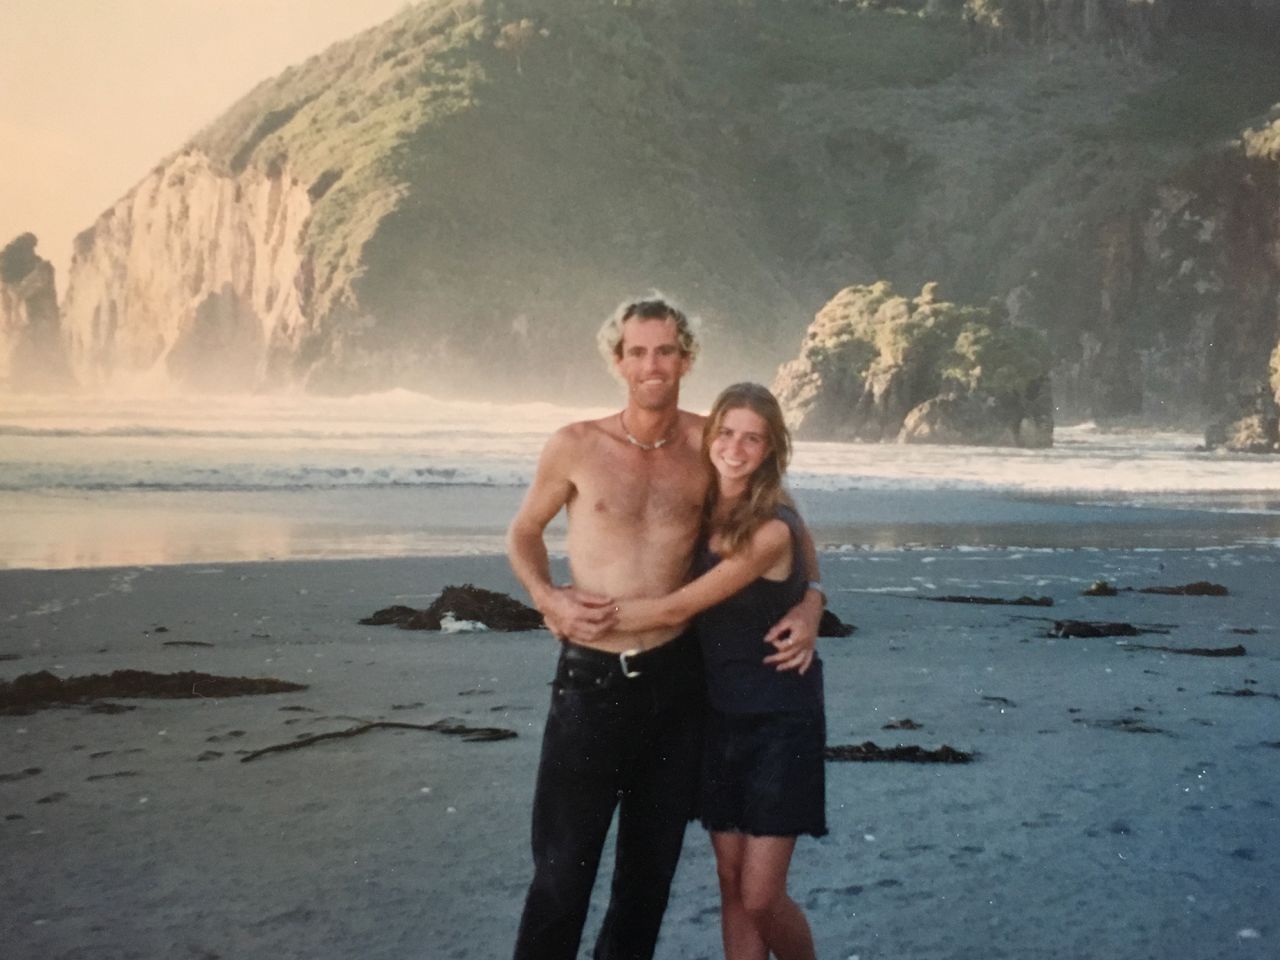 El plan de Tim y Tracy de volver a verse después de la segunda cita salió mal. Aquí están los dos en una playa de Chile en enero de 1997.